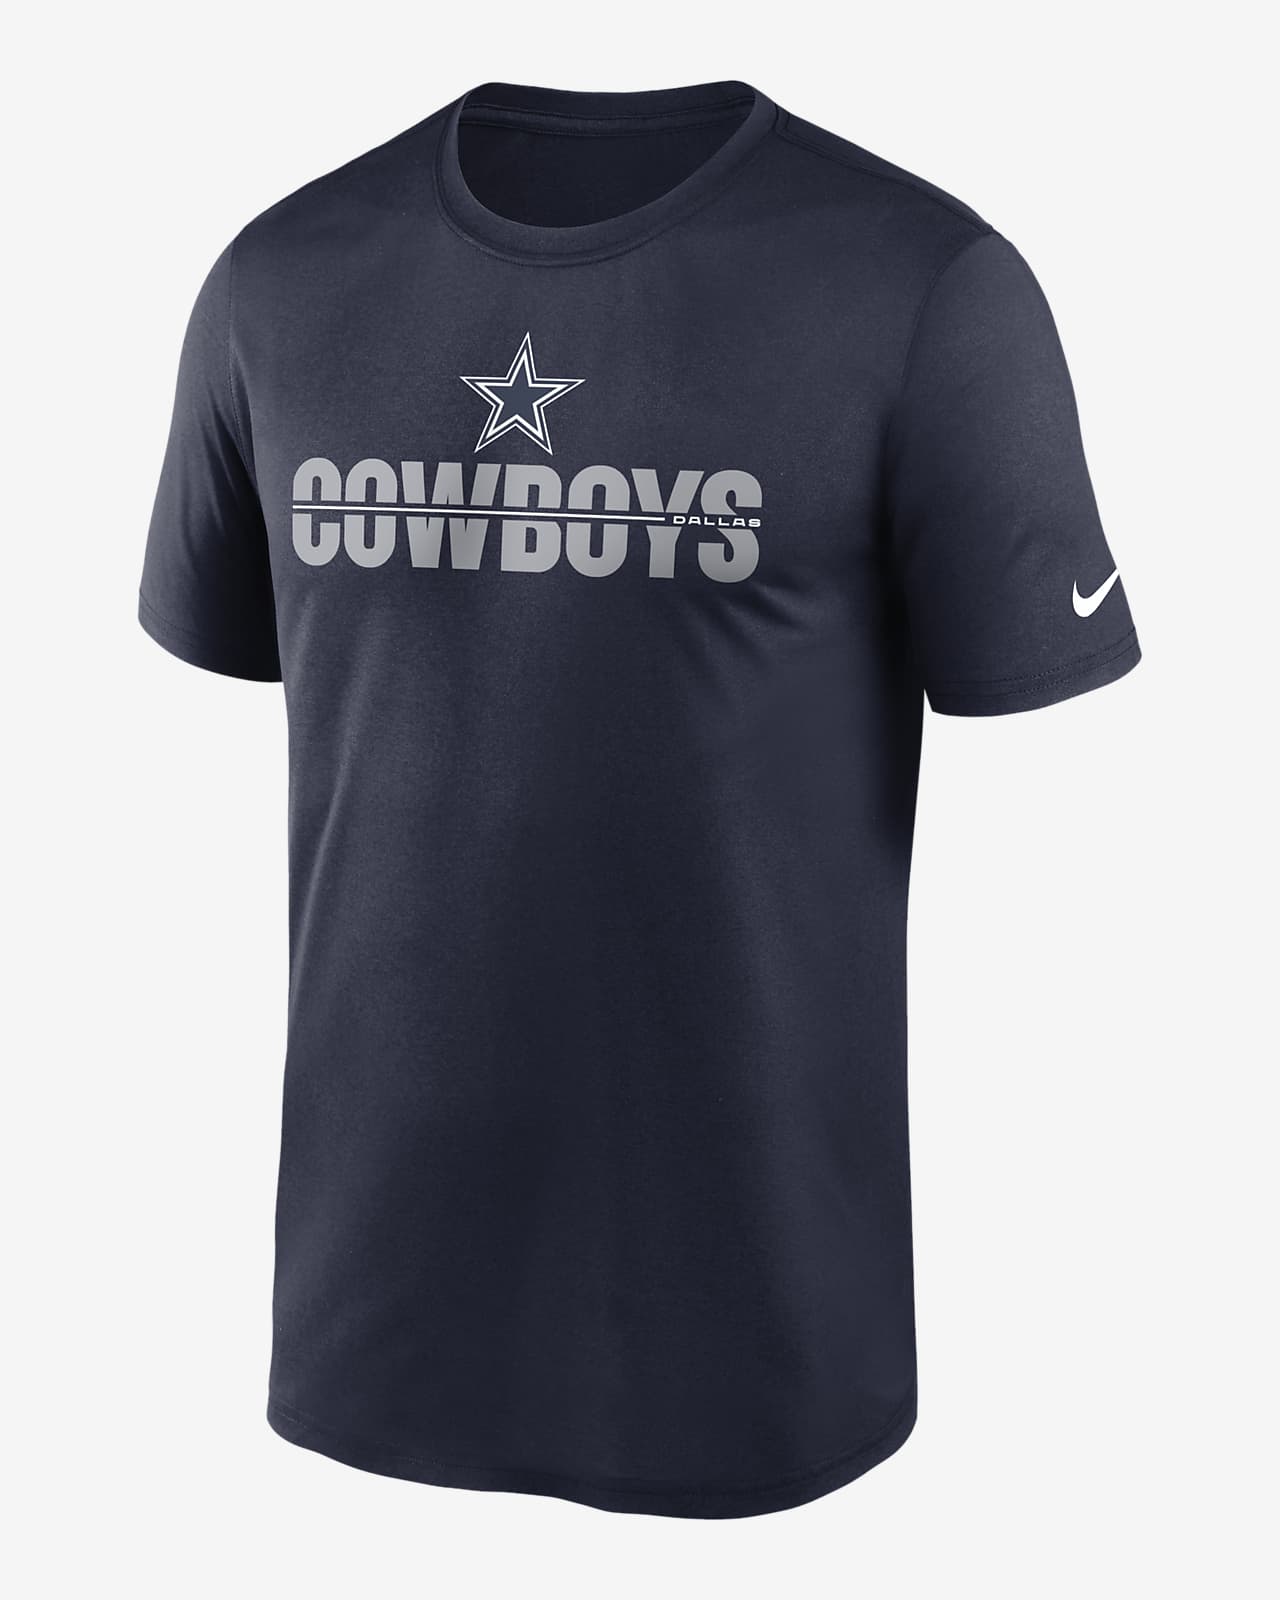 dallas cowboys matching shirts